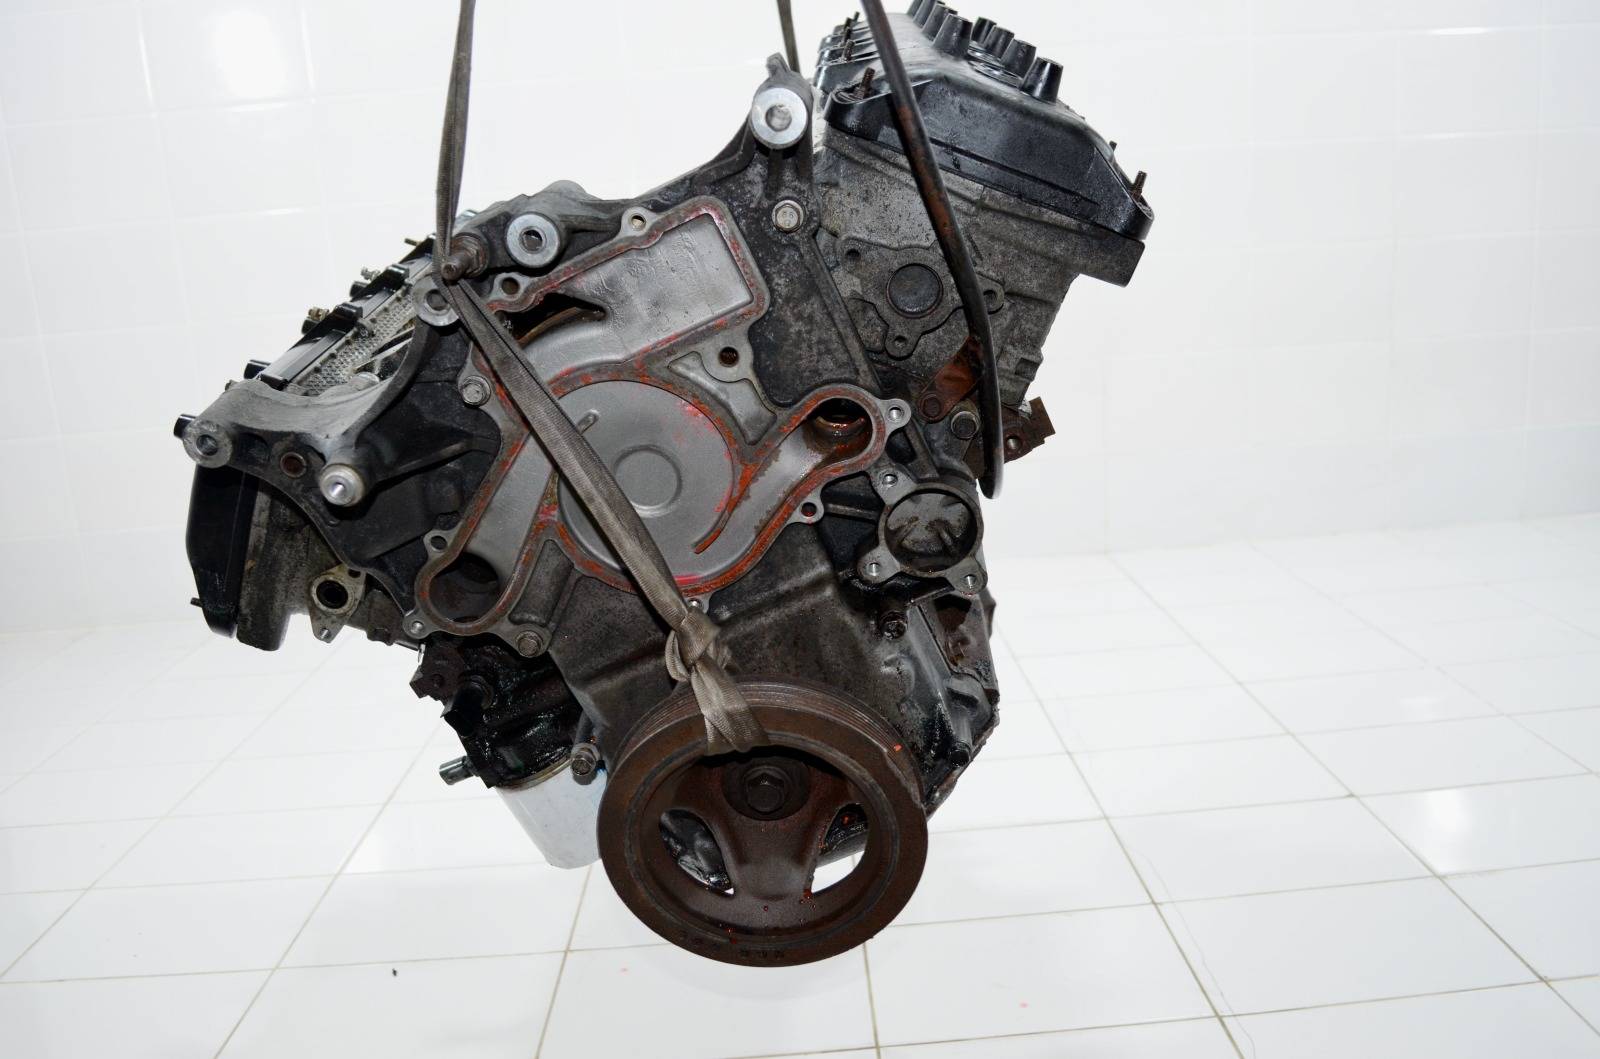 Двигатель ДВС RAM 2004-2008 3 5.7 HEMI EZB